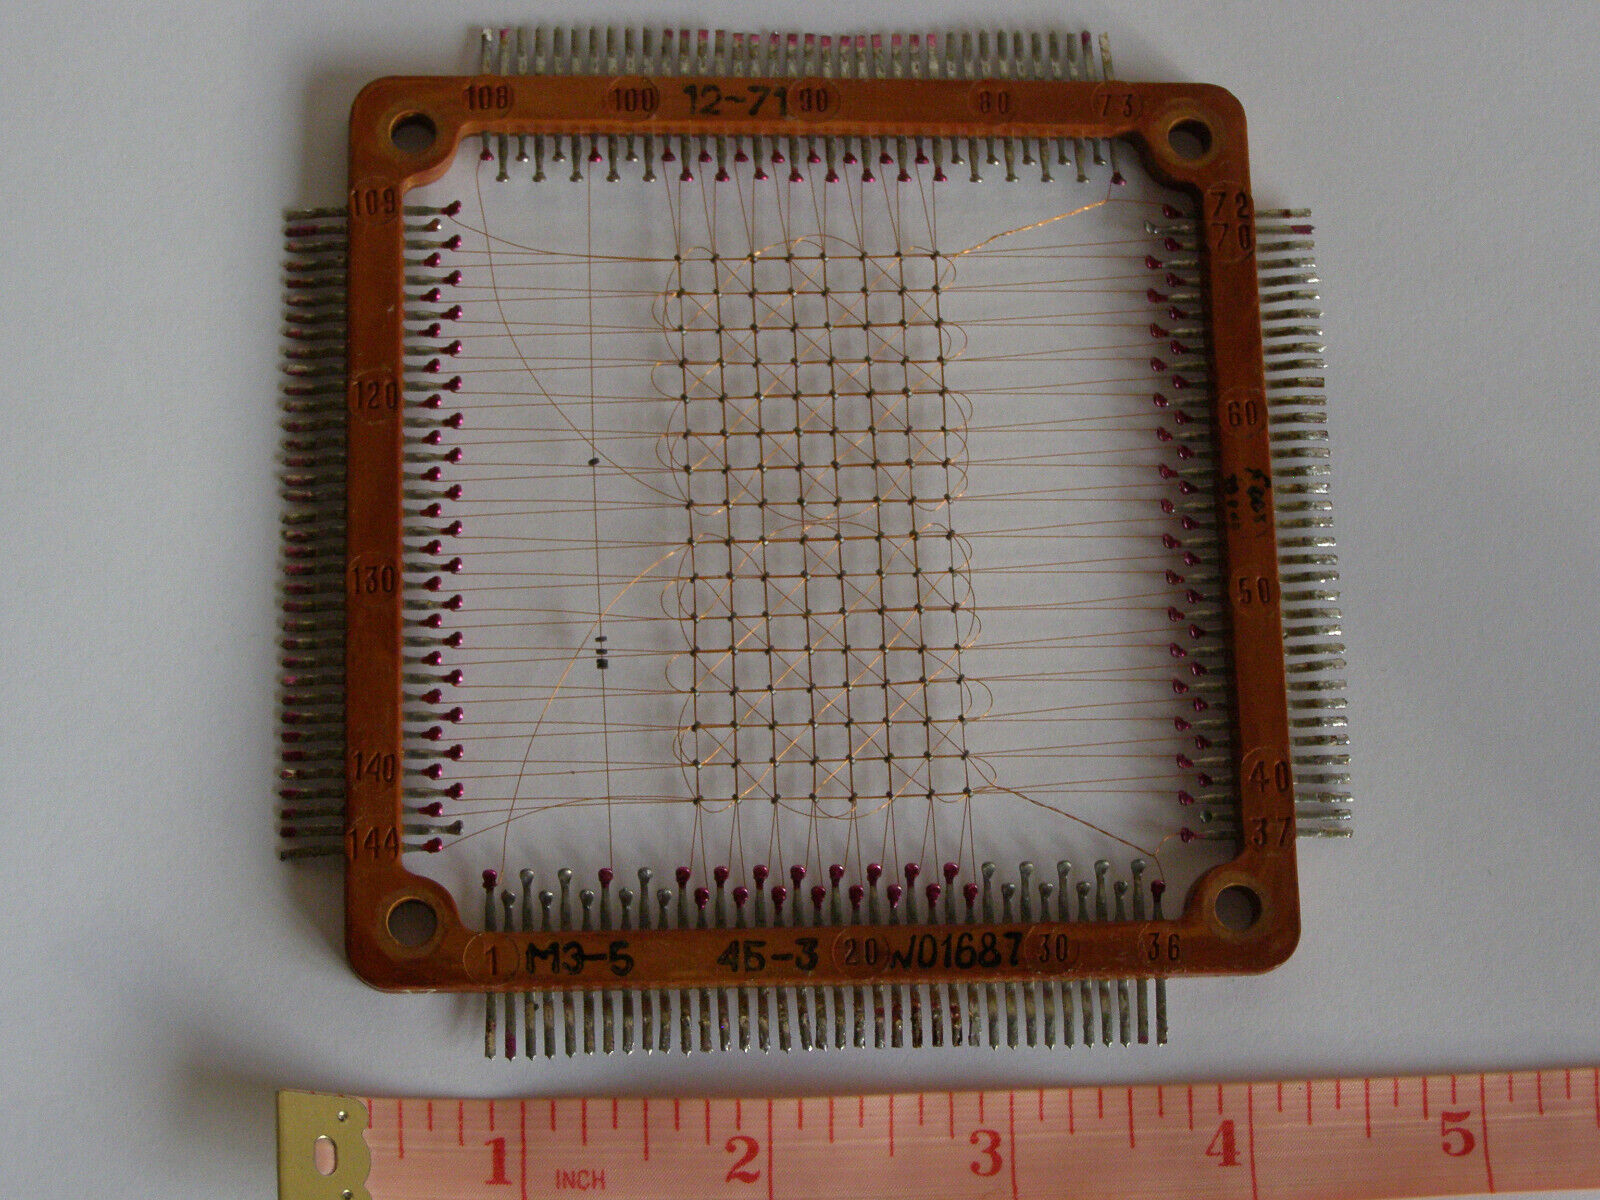 Computer Ural-11 USSR Magnetic Ferrite Core Memory Plate ME-5 RAM 128 bit 1971